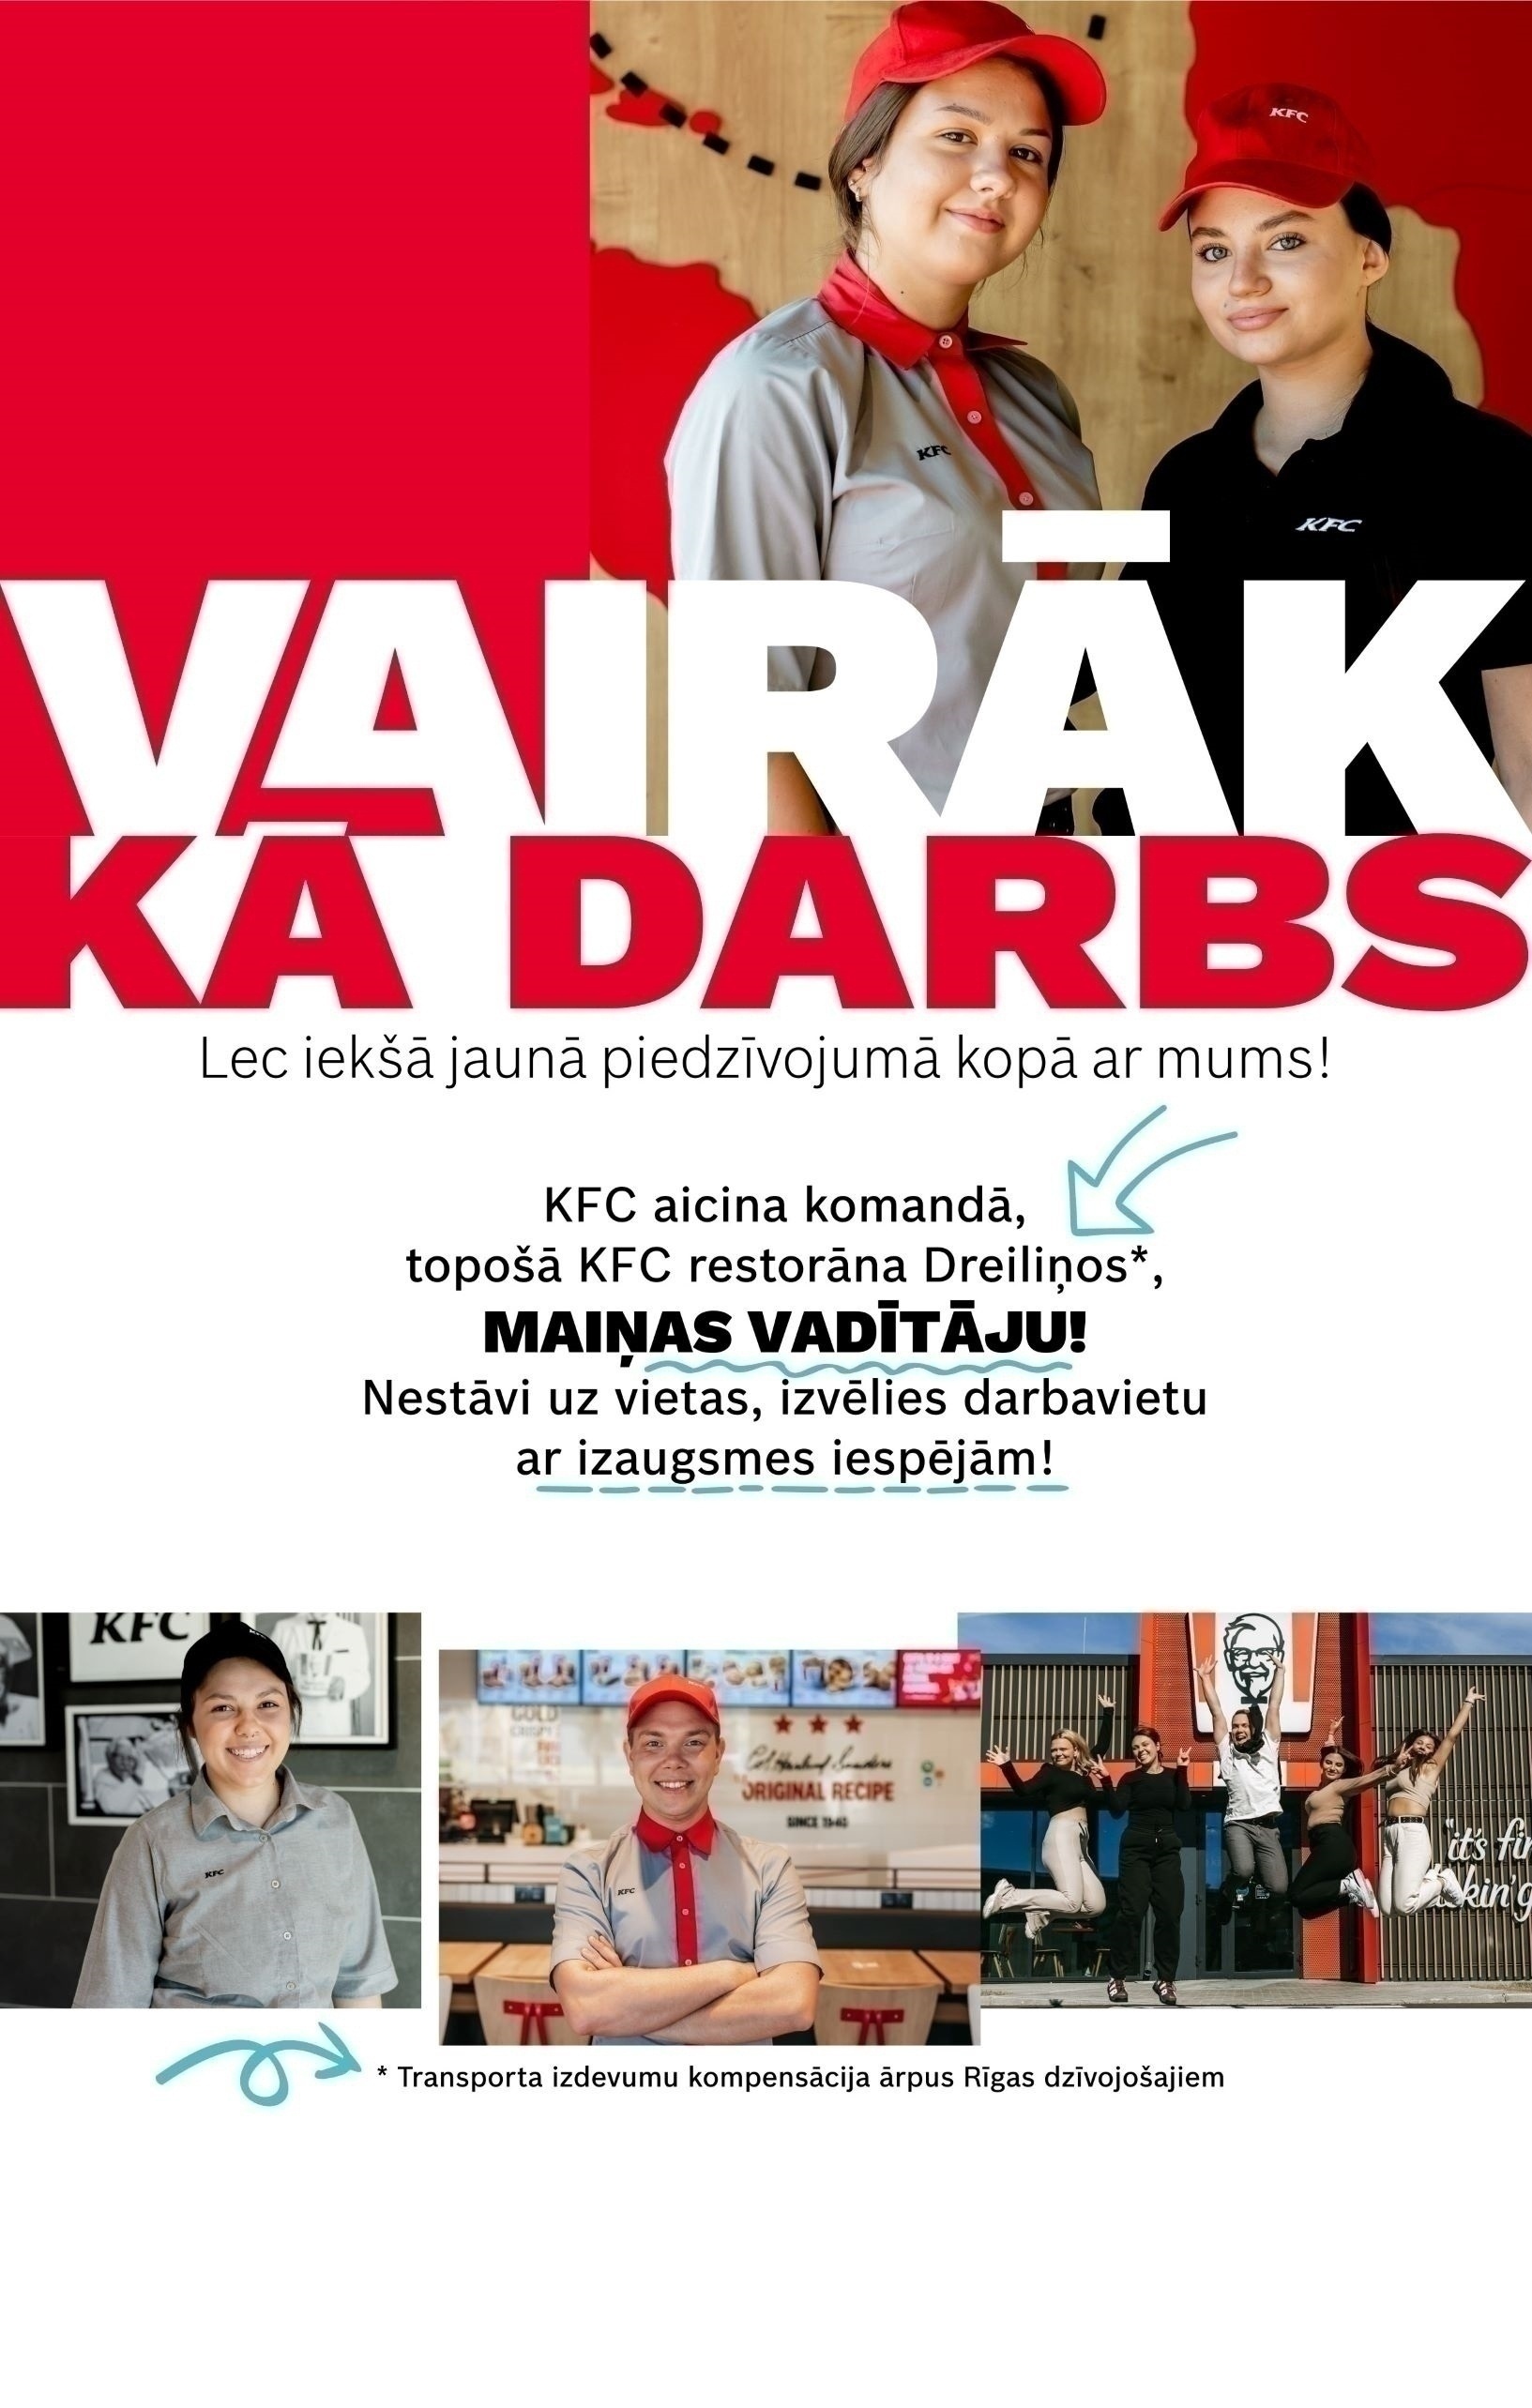 CVMarket.lv klients Jaunākais "KFC" maiņas vadītājs/-a pirmajā KFC Drive Thru restorānā Latvijā!